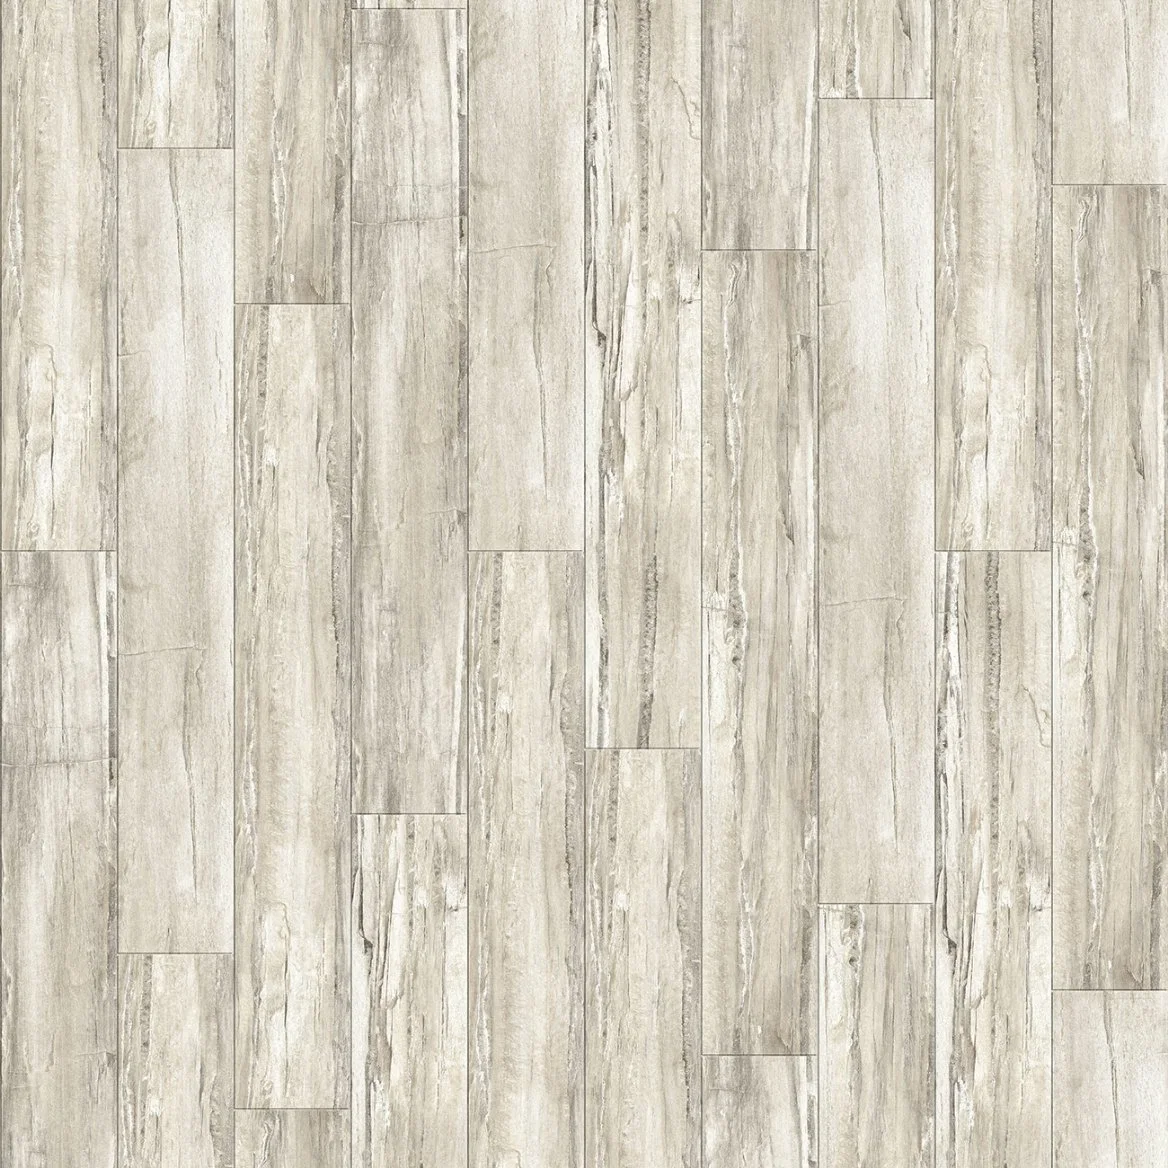 Building Materials Wood Grain PVC Sheet Click Flooring Ceramic High Elasticity 5.5mm Spc Vinyl Flooring